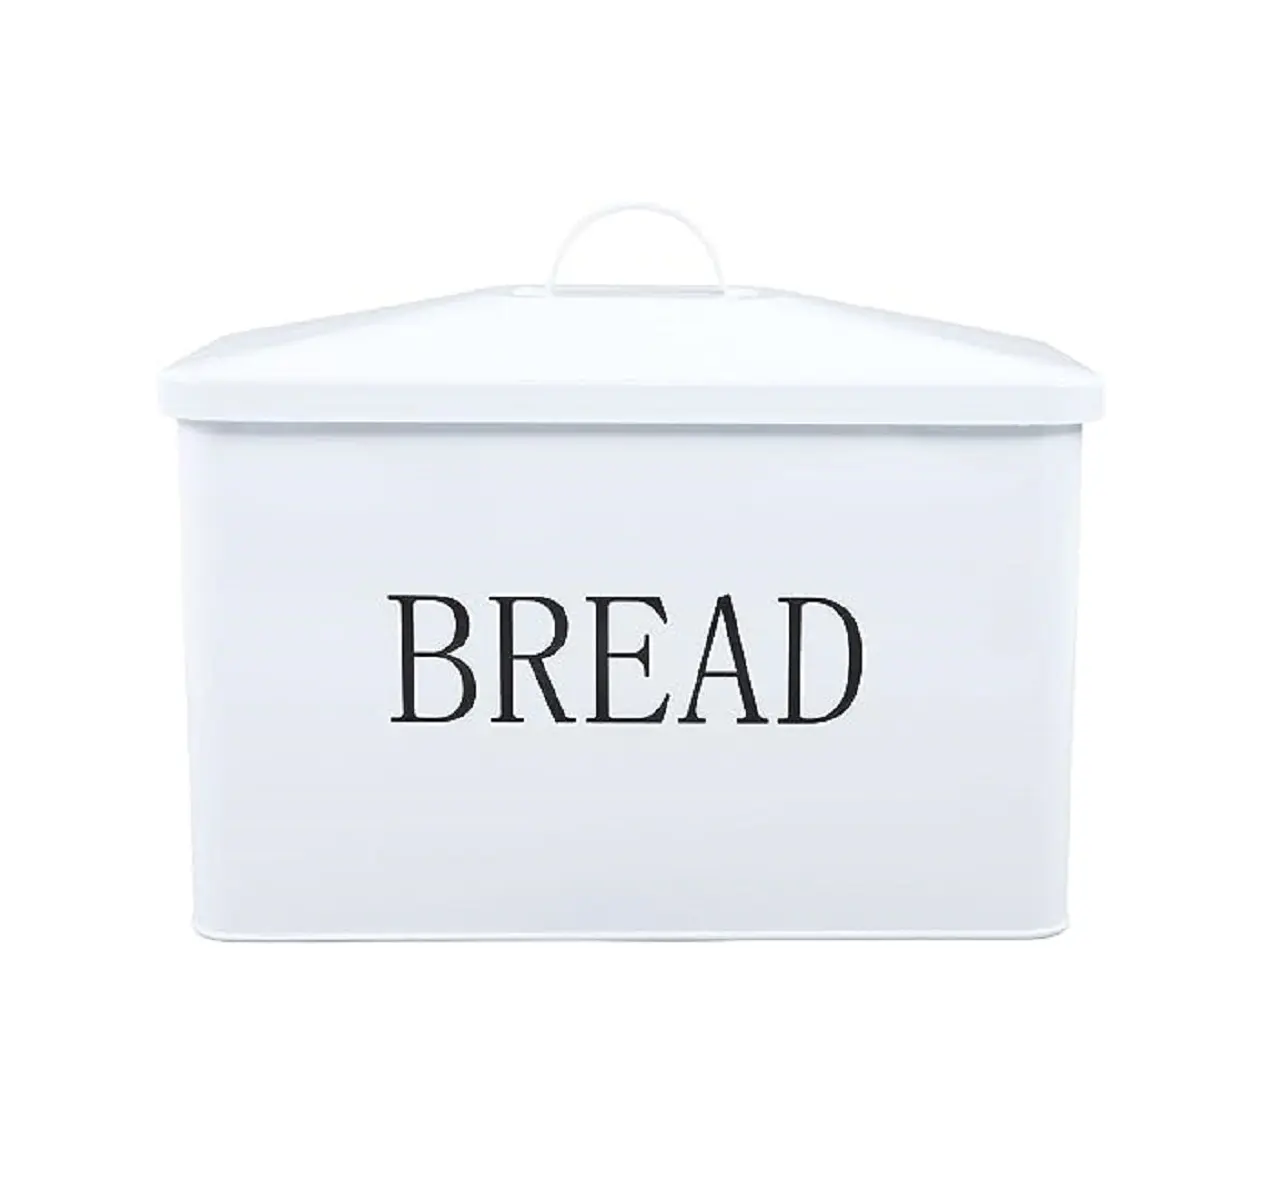 Kotak penyimpanan roti ukuran sedang desain populer kotak penyimpanan besi Solid kualitas Premium untuk peralatan dapur dengan harga grosir